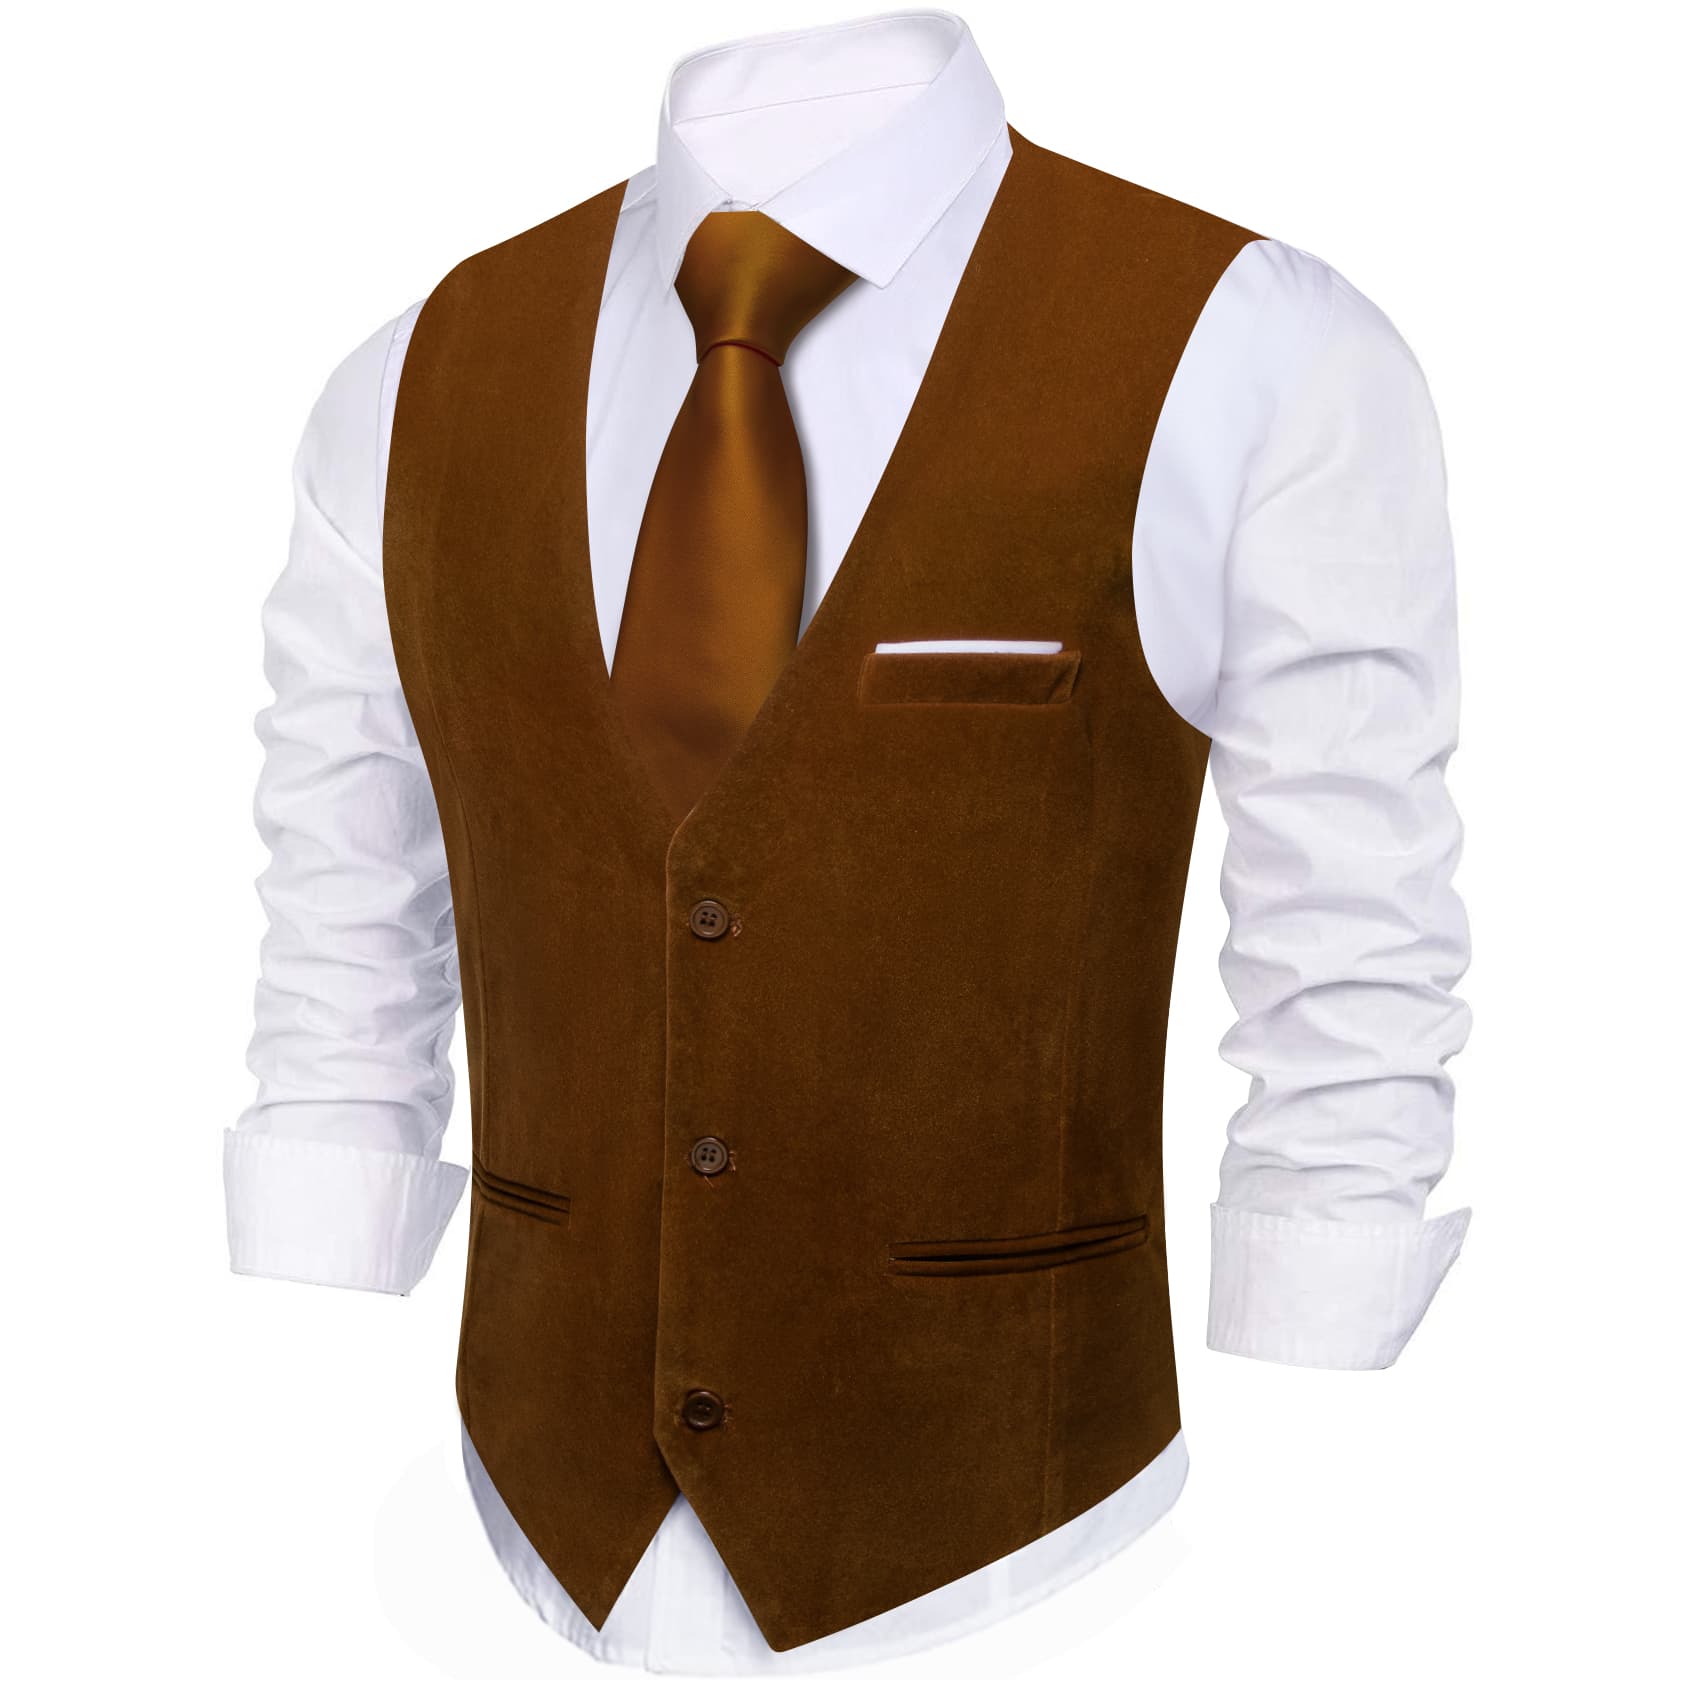 Barry Wang Waistcoat for Men Solid Caramel Brown Velvet Vest